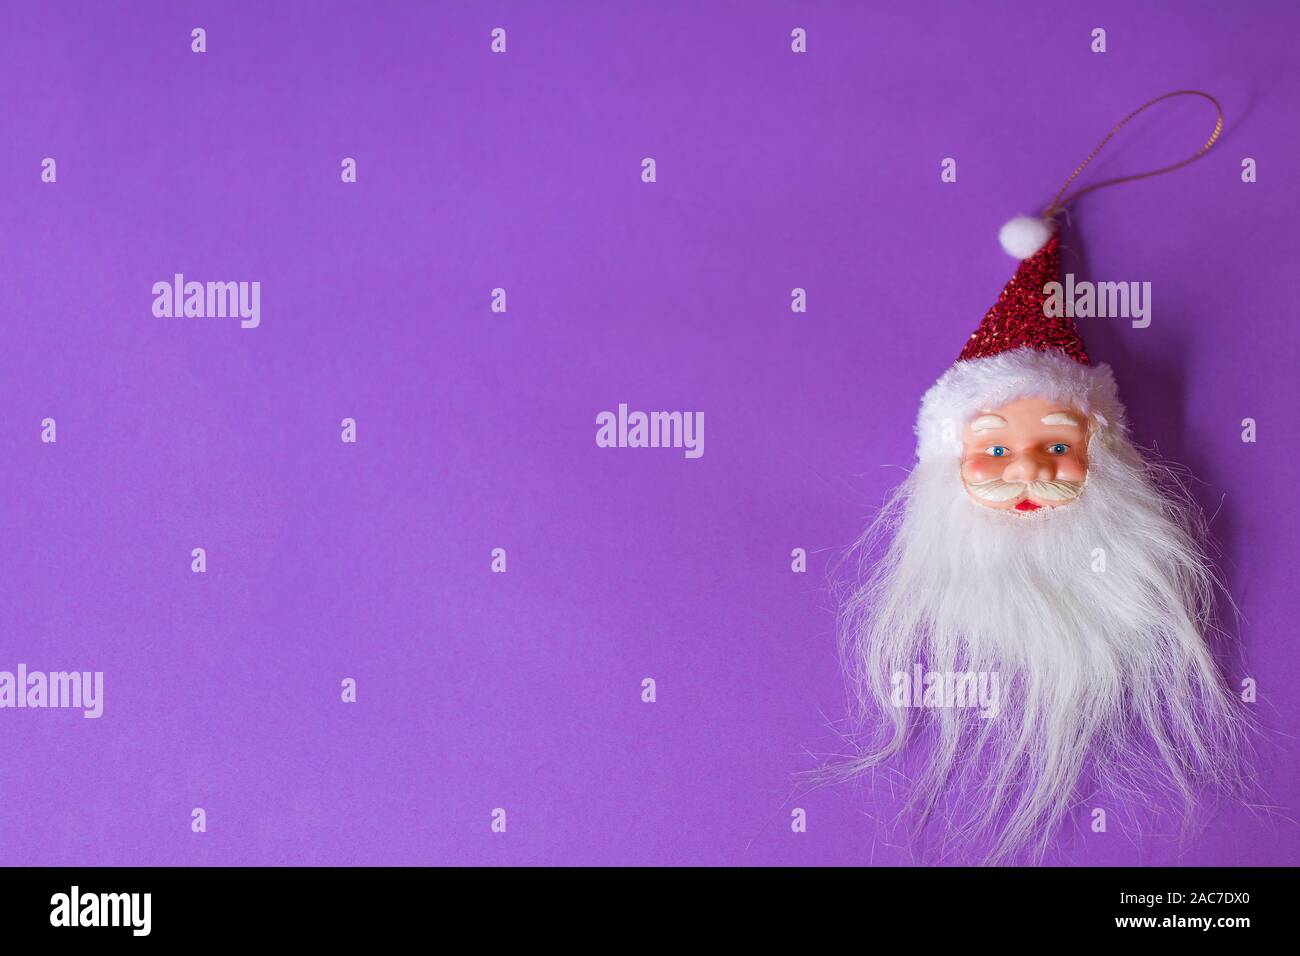 Santa Claus mit dem Kopf voraus positioniert auf der rechten Seite einer violetten Hintergrund. Es gibt eine Menge kopieren Platz für Text zur Verfügung. Stockfoto